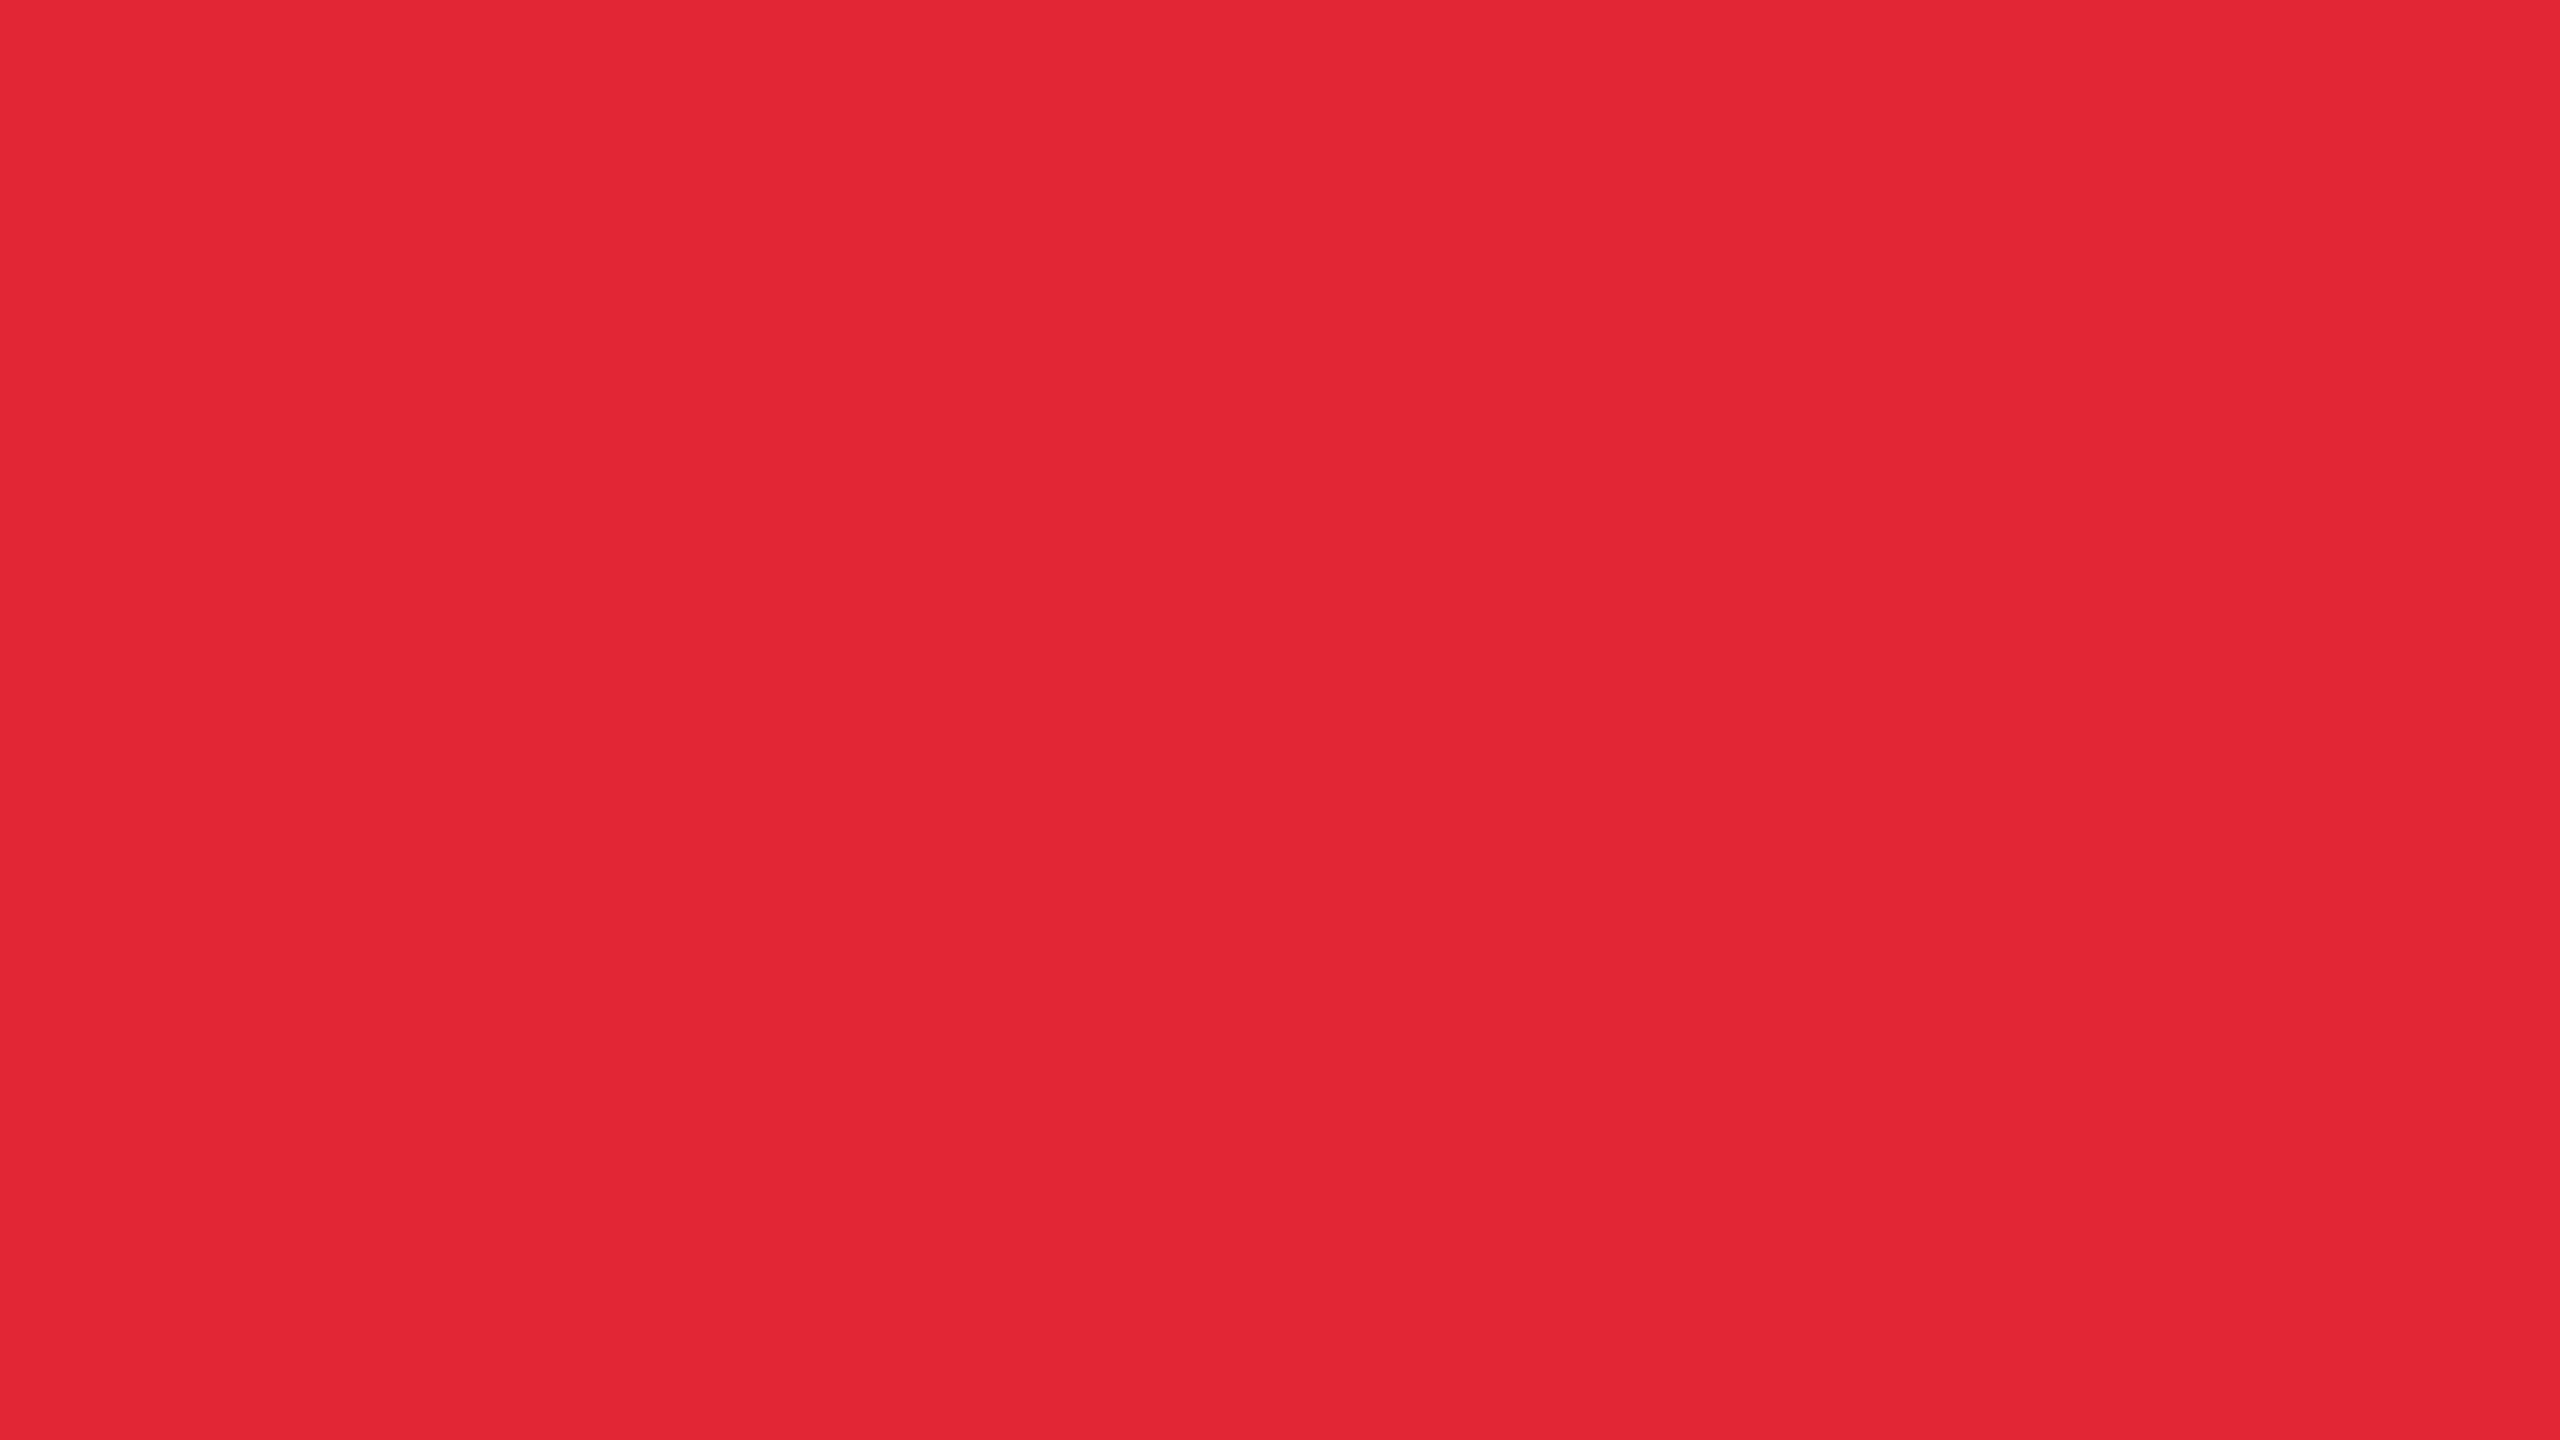 2560x1440 Alizarin Crimson Solid Color Background